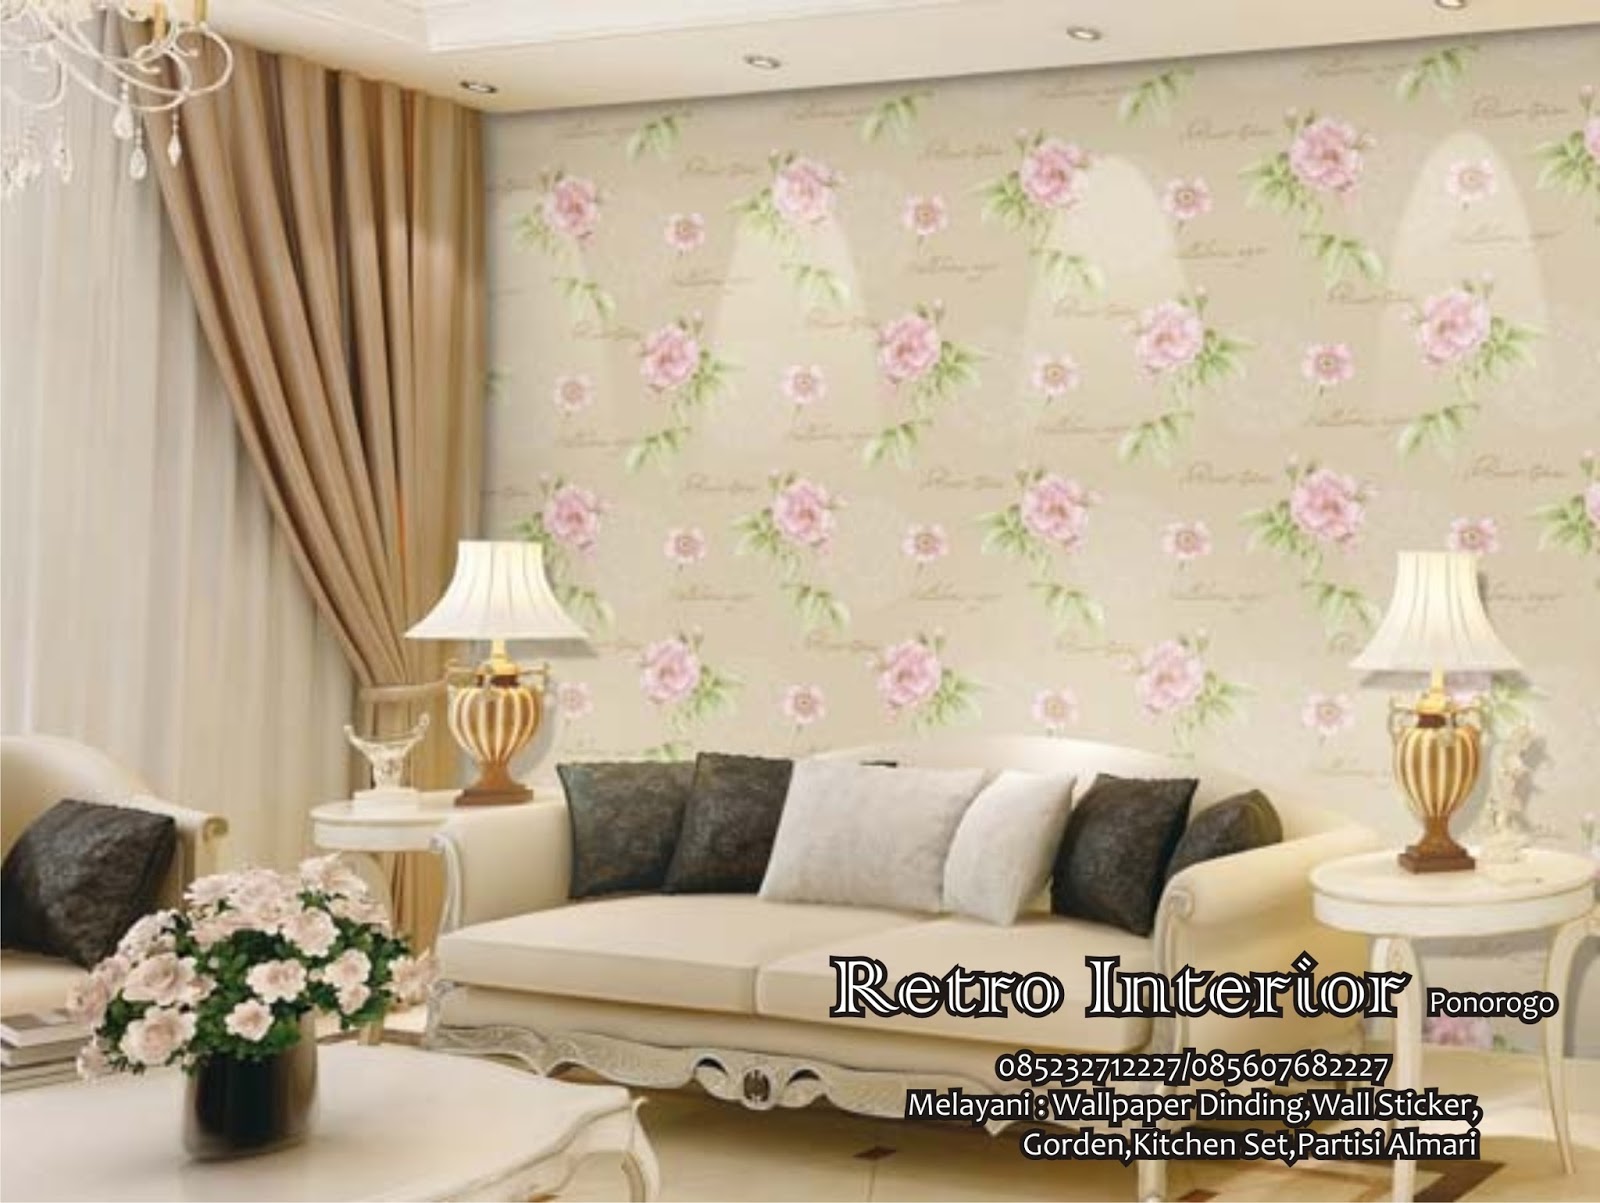  Contoh  Gambar Wallpaper  Bunga Gudang Wallpaper 